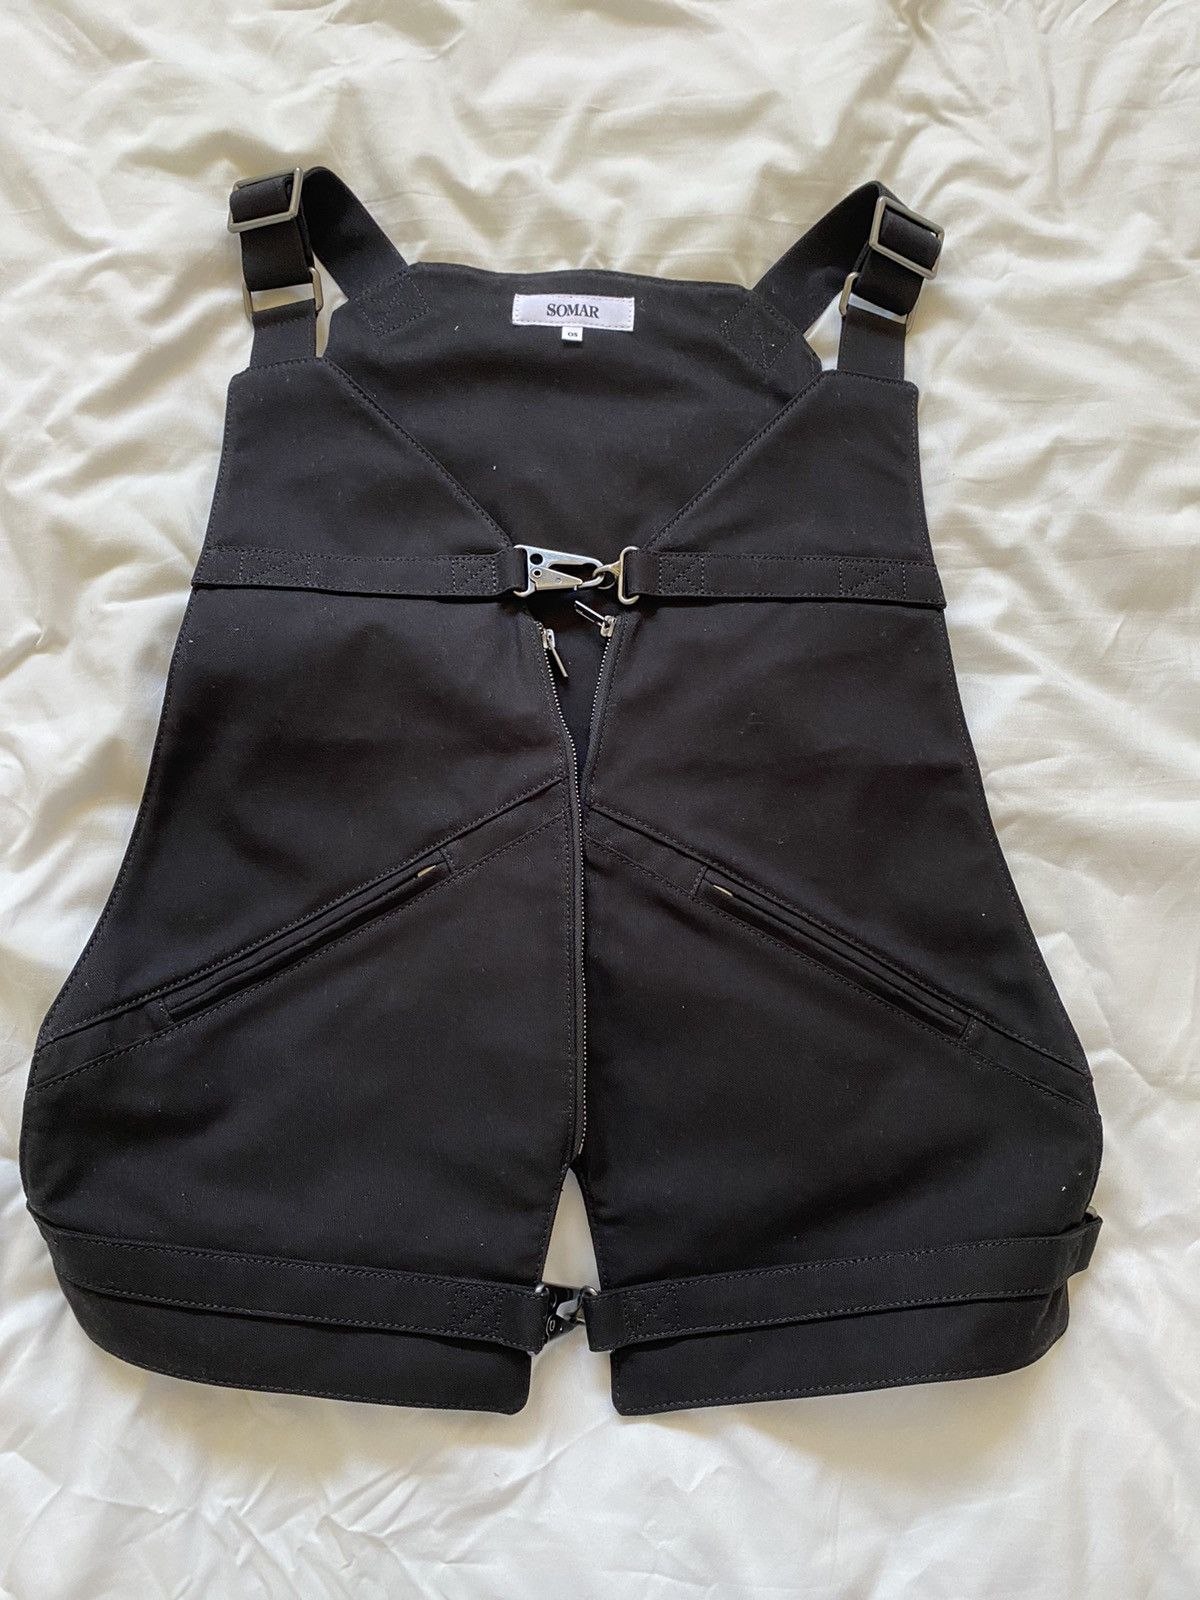 Colette Hyatt Somar K410 Work Type Vest Black Colette Hyatt | Grailed